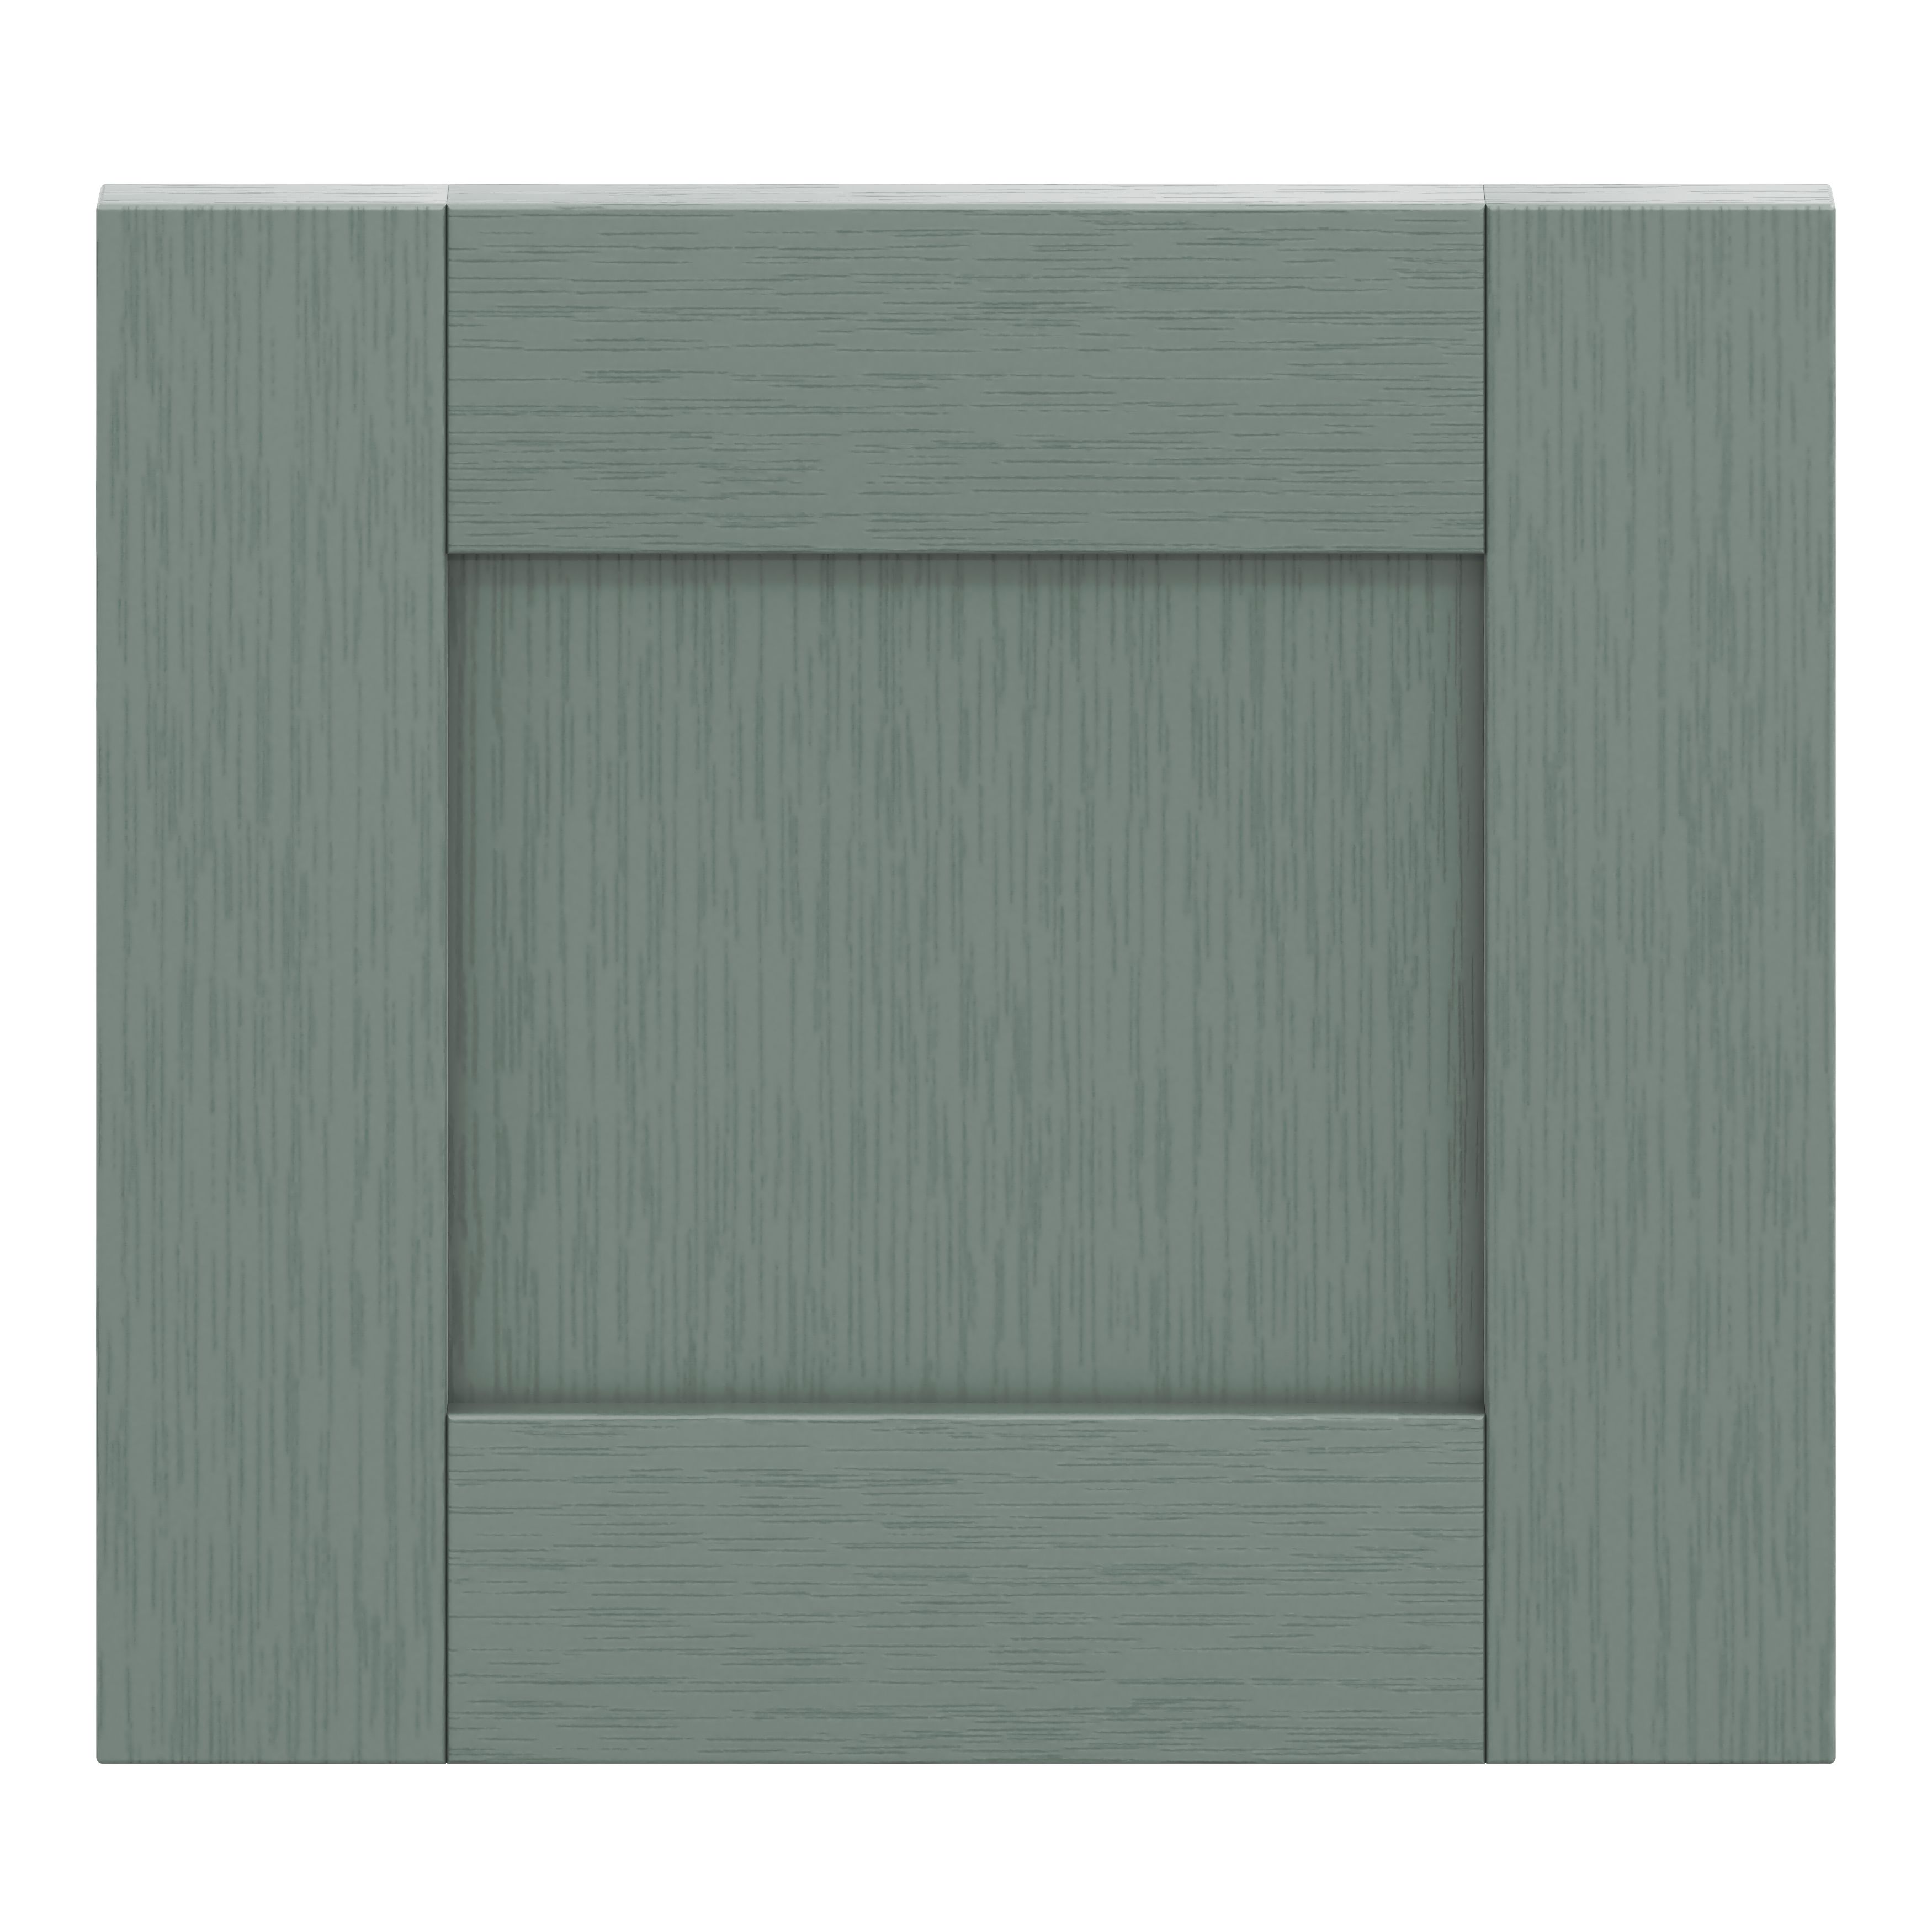 GoodHome Alpinia Matt green wood effect Drawer front, bridging door & bi fold door, (W)400mm (H)356mm (T)18mm